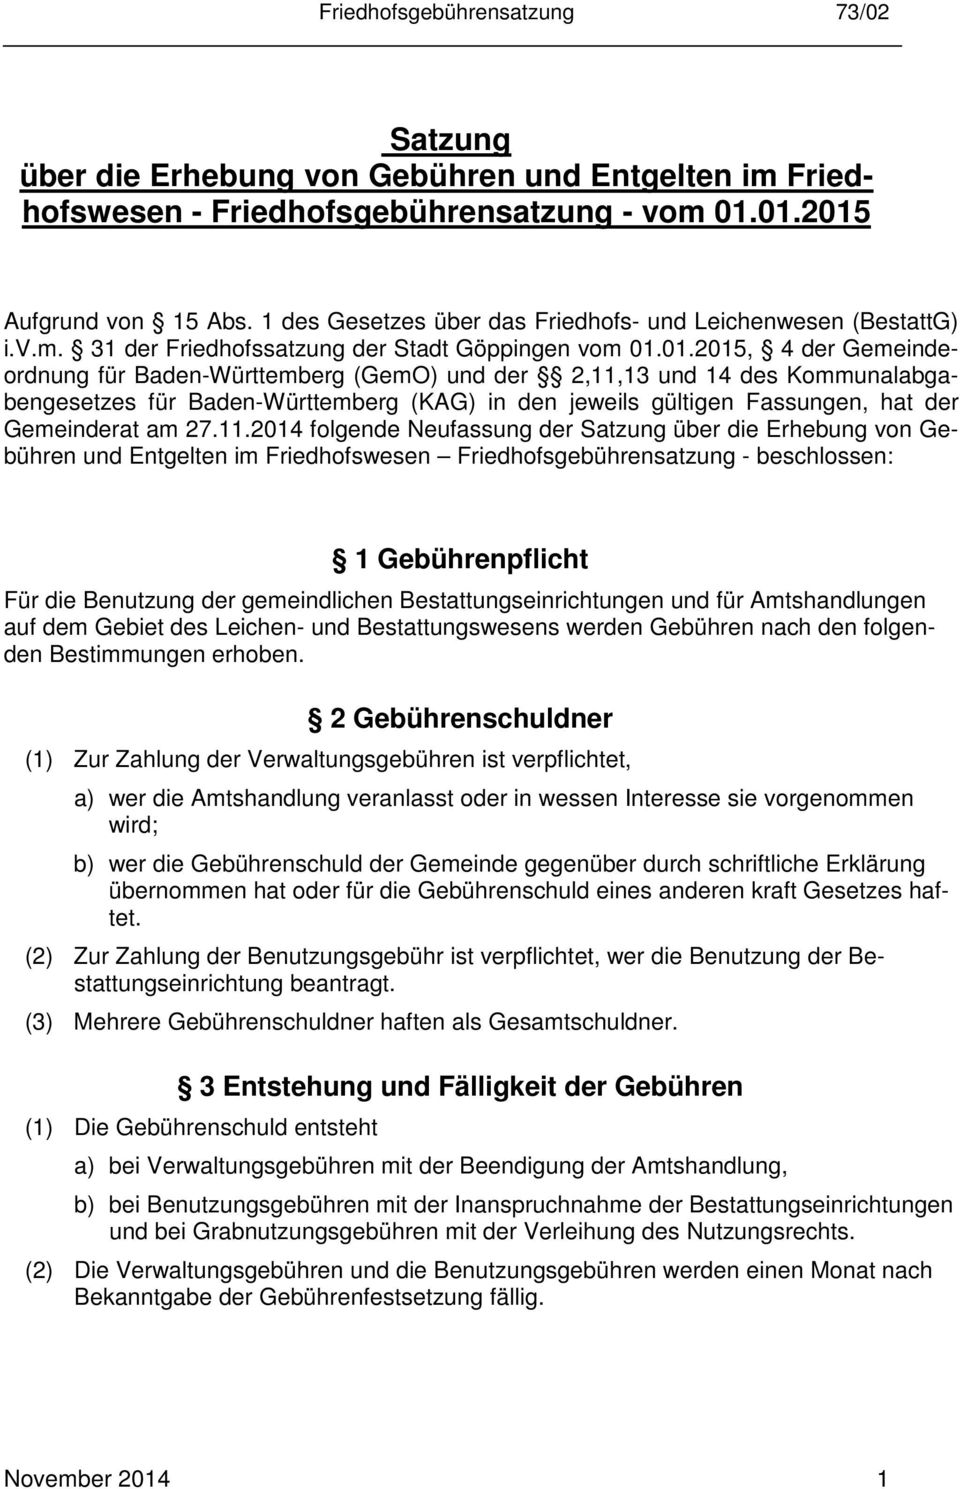 01.2015, 4 der Gemeindeordnung für Baden-Württemberg (GemO) und der 2,11,13 und 14 des Kommunalabgabengesetzes für Baden-Württemberg (KAG) in den jeweils gültigen Fassungen, hat der Gemeinderat am 27.